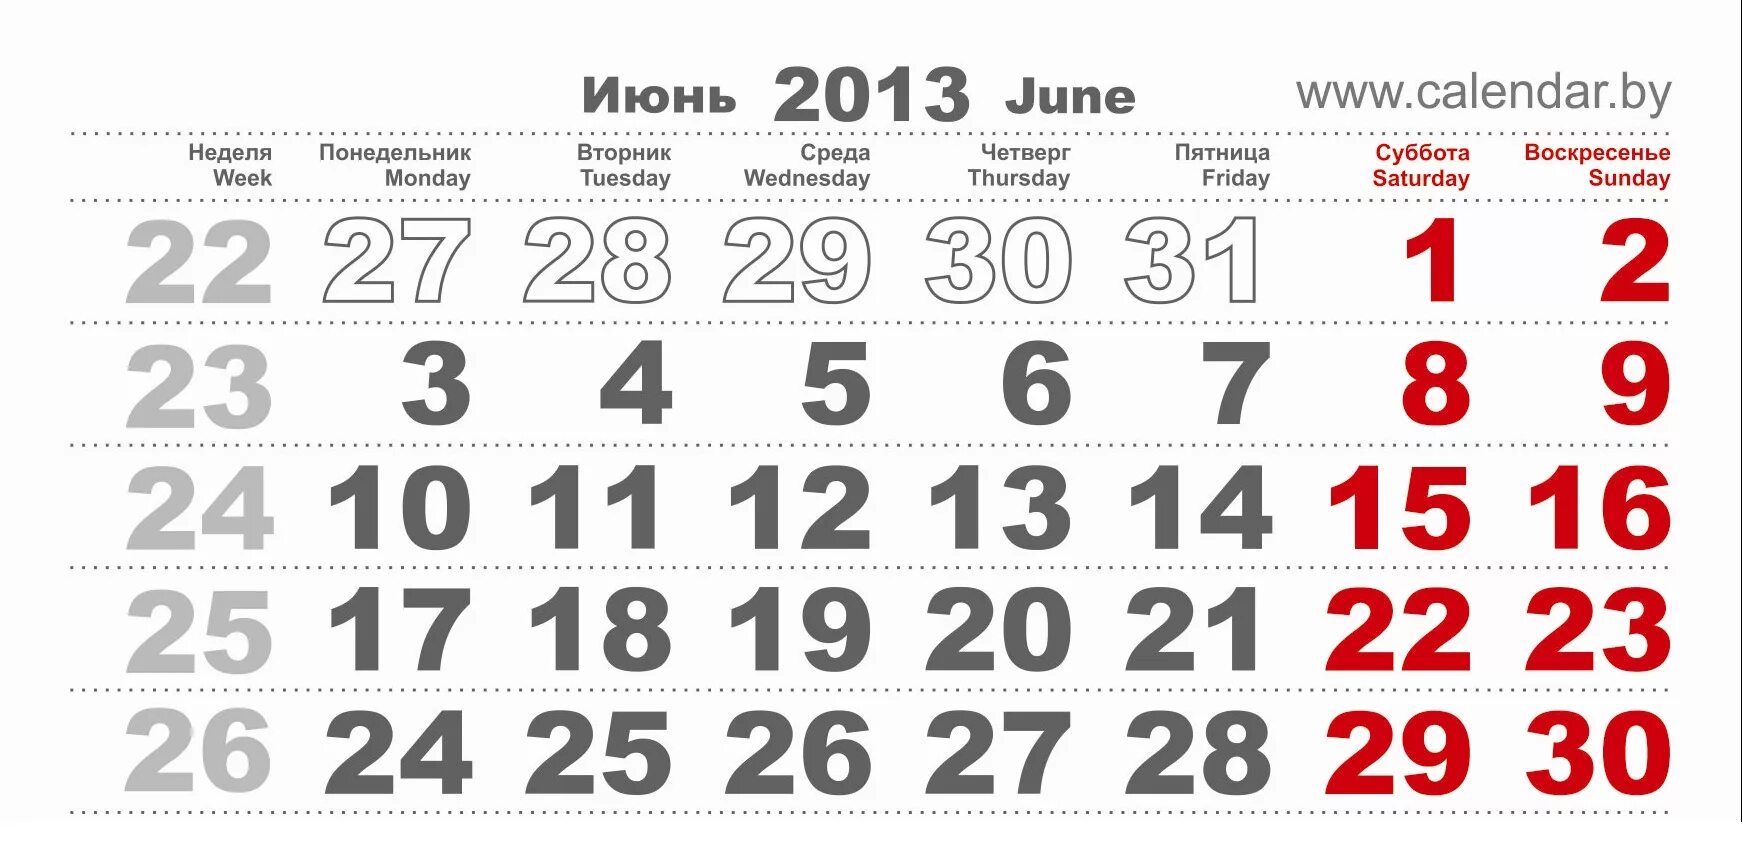 Календарь март 2016. Календарь на март 2013 года. Июль 2013 года календарь. Март 2016 года. Октябрь 2016 года календарь.